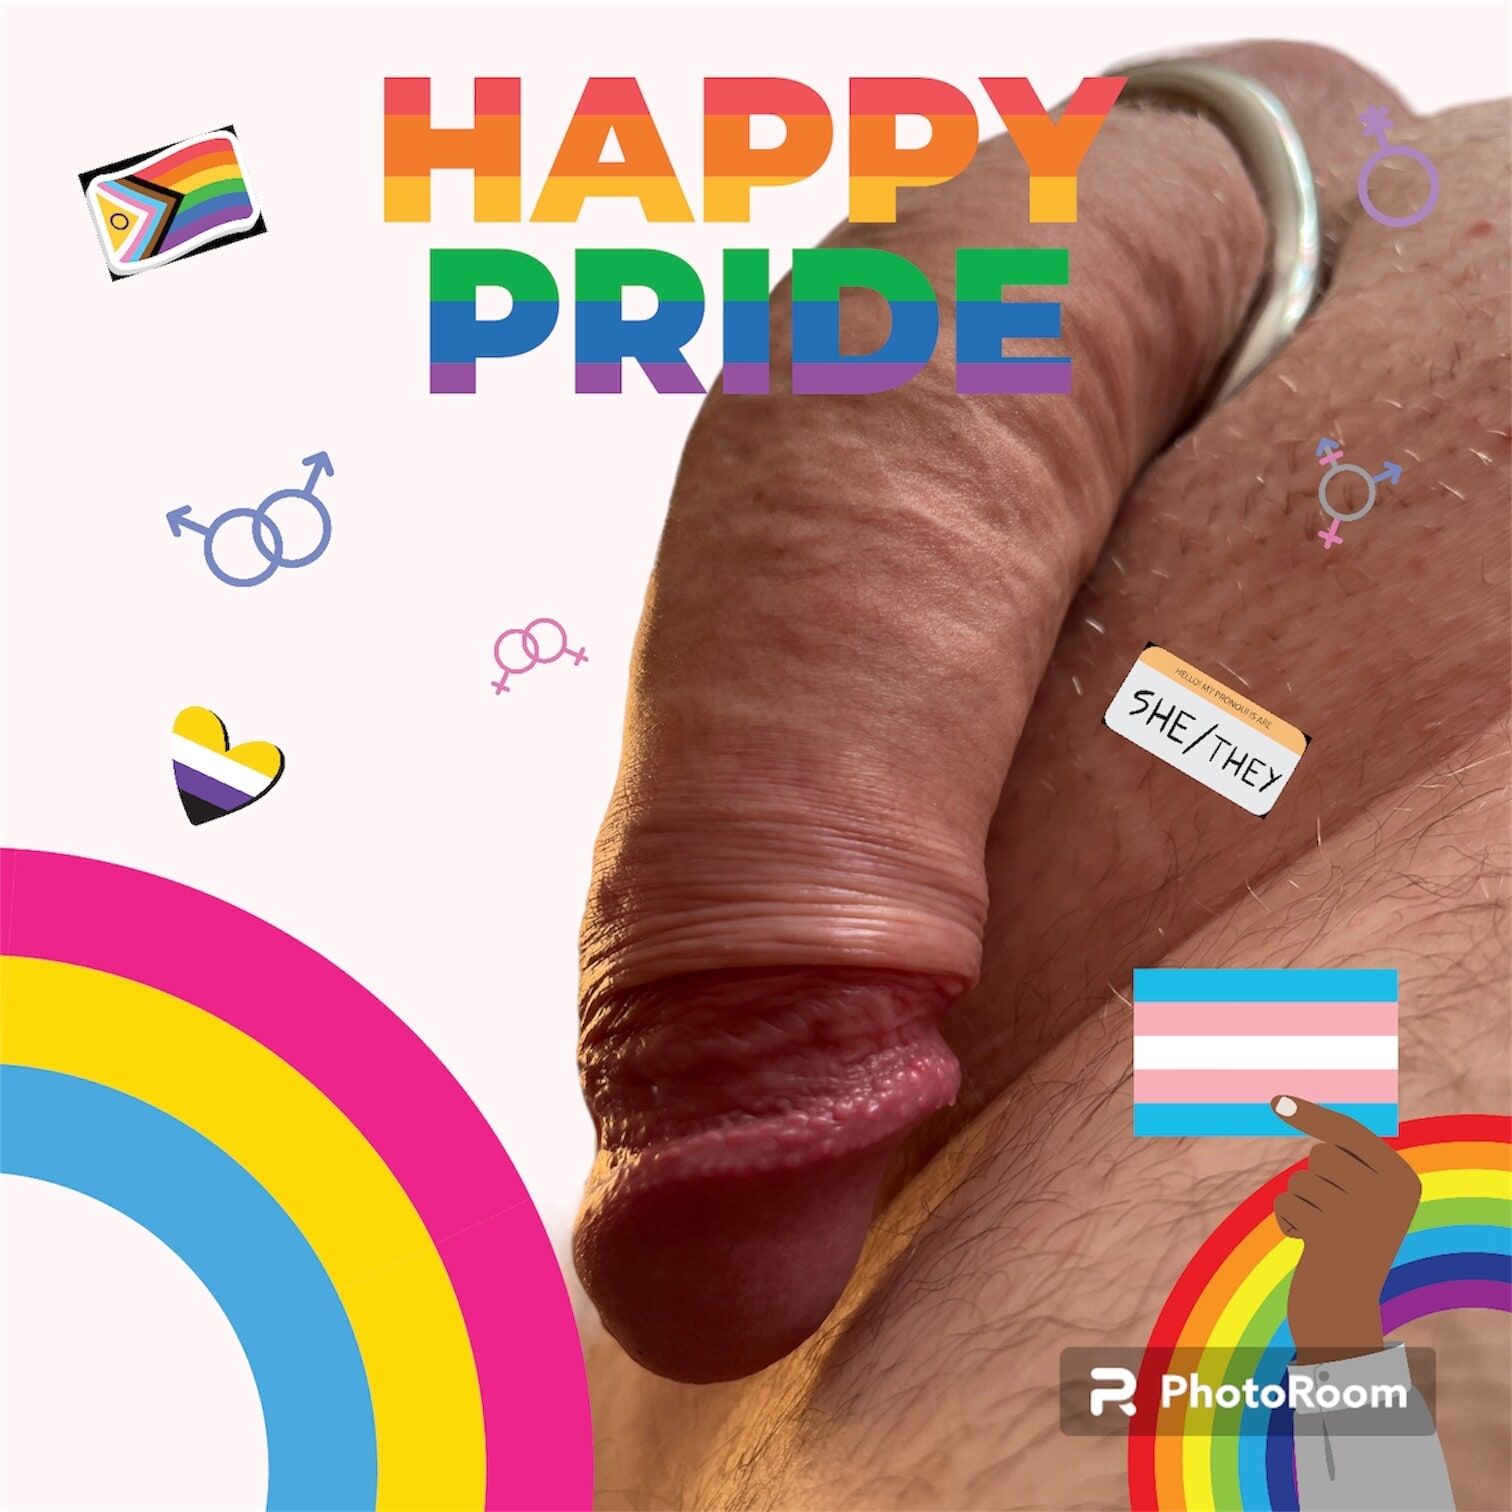 Happy pride #5